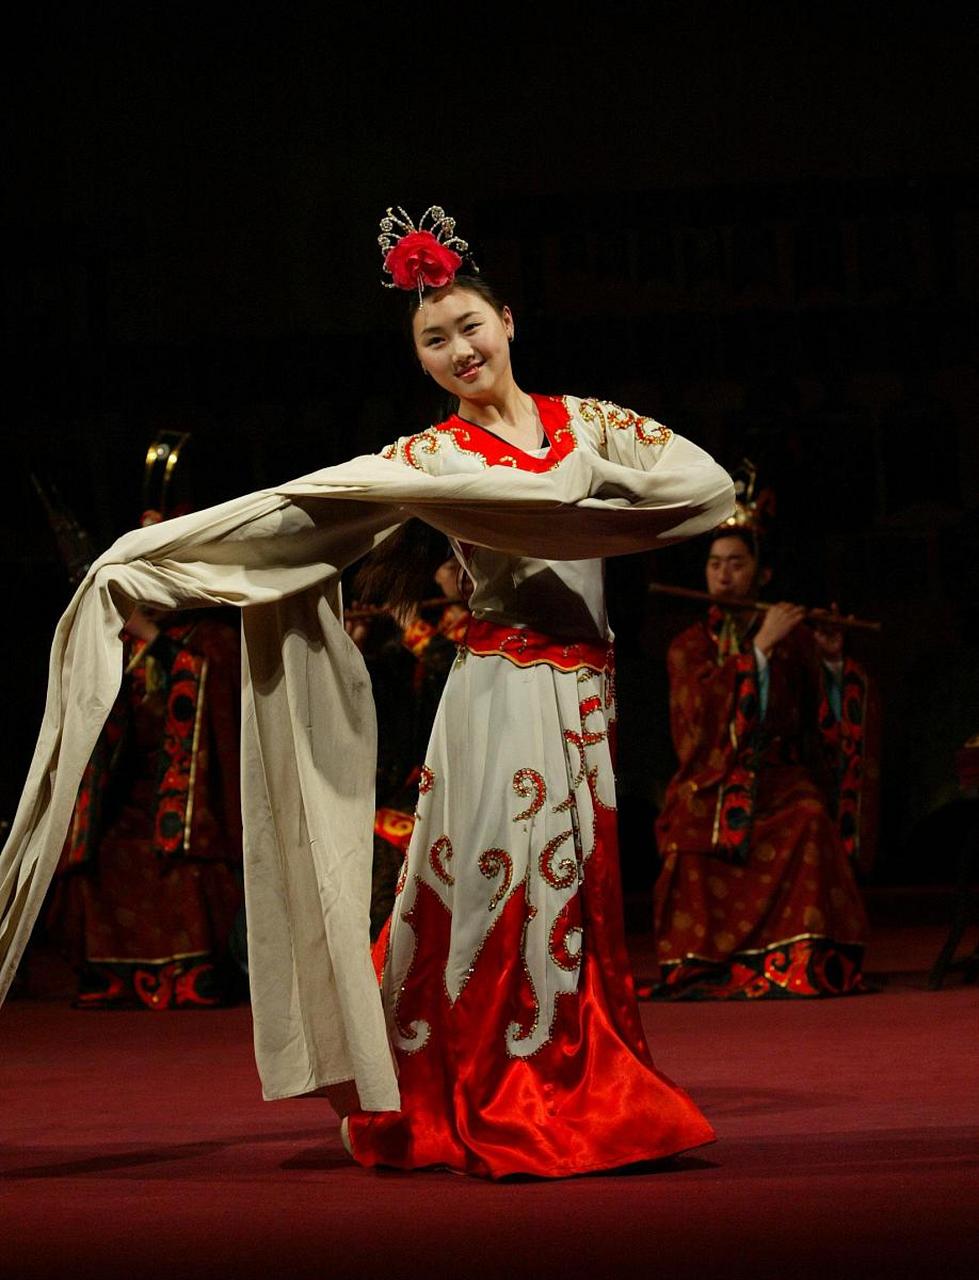 汉唐舞蹈的来历 汉唐舞蹈是指中国历史上汉朝和唐朝时期的舞蹈形式